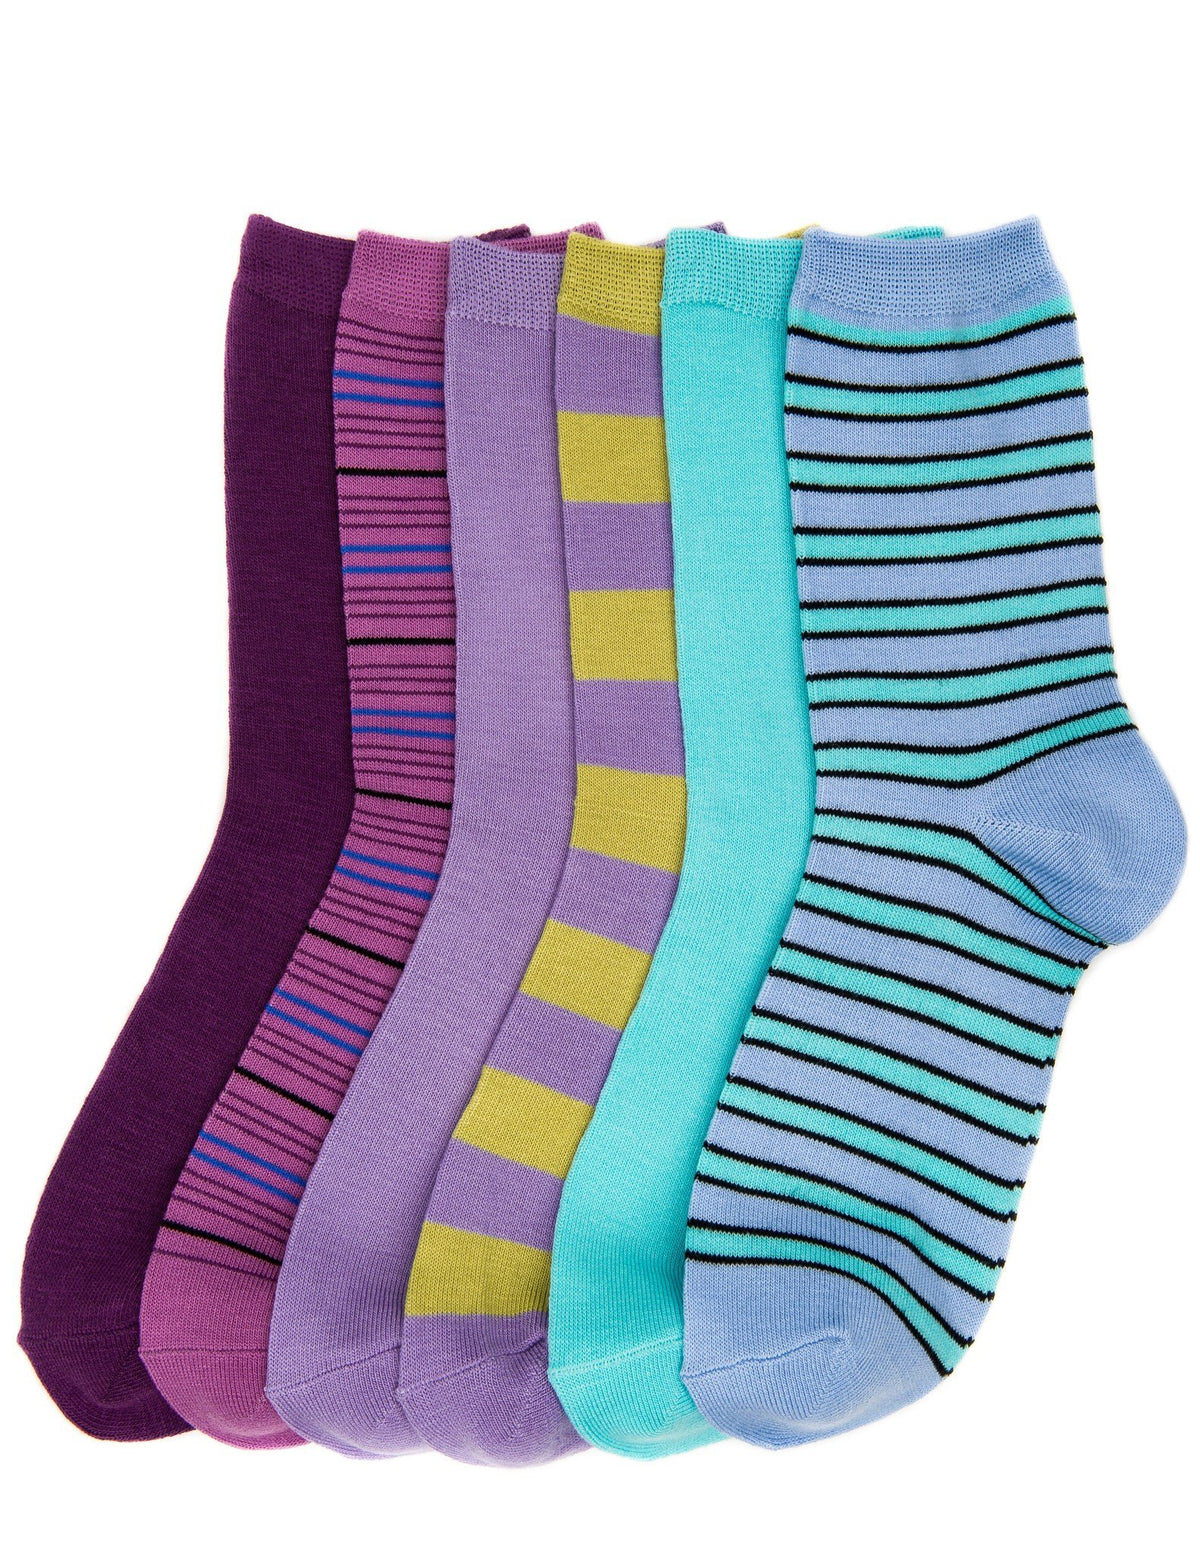 Women's Soft Premium Crew Socks - 6 Pairs - Set 1